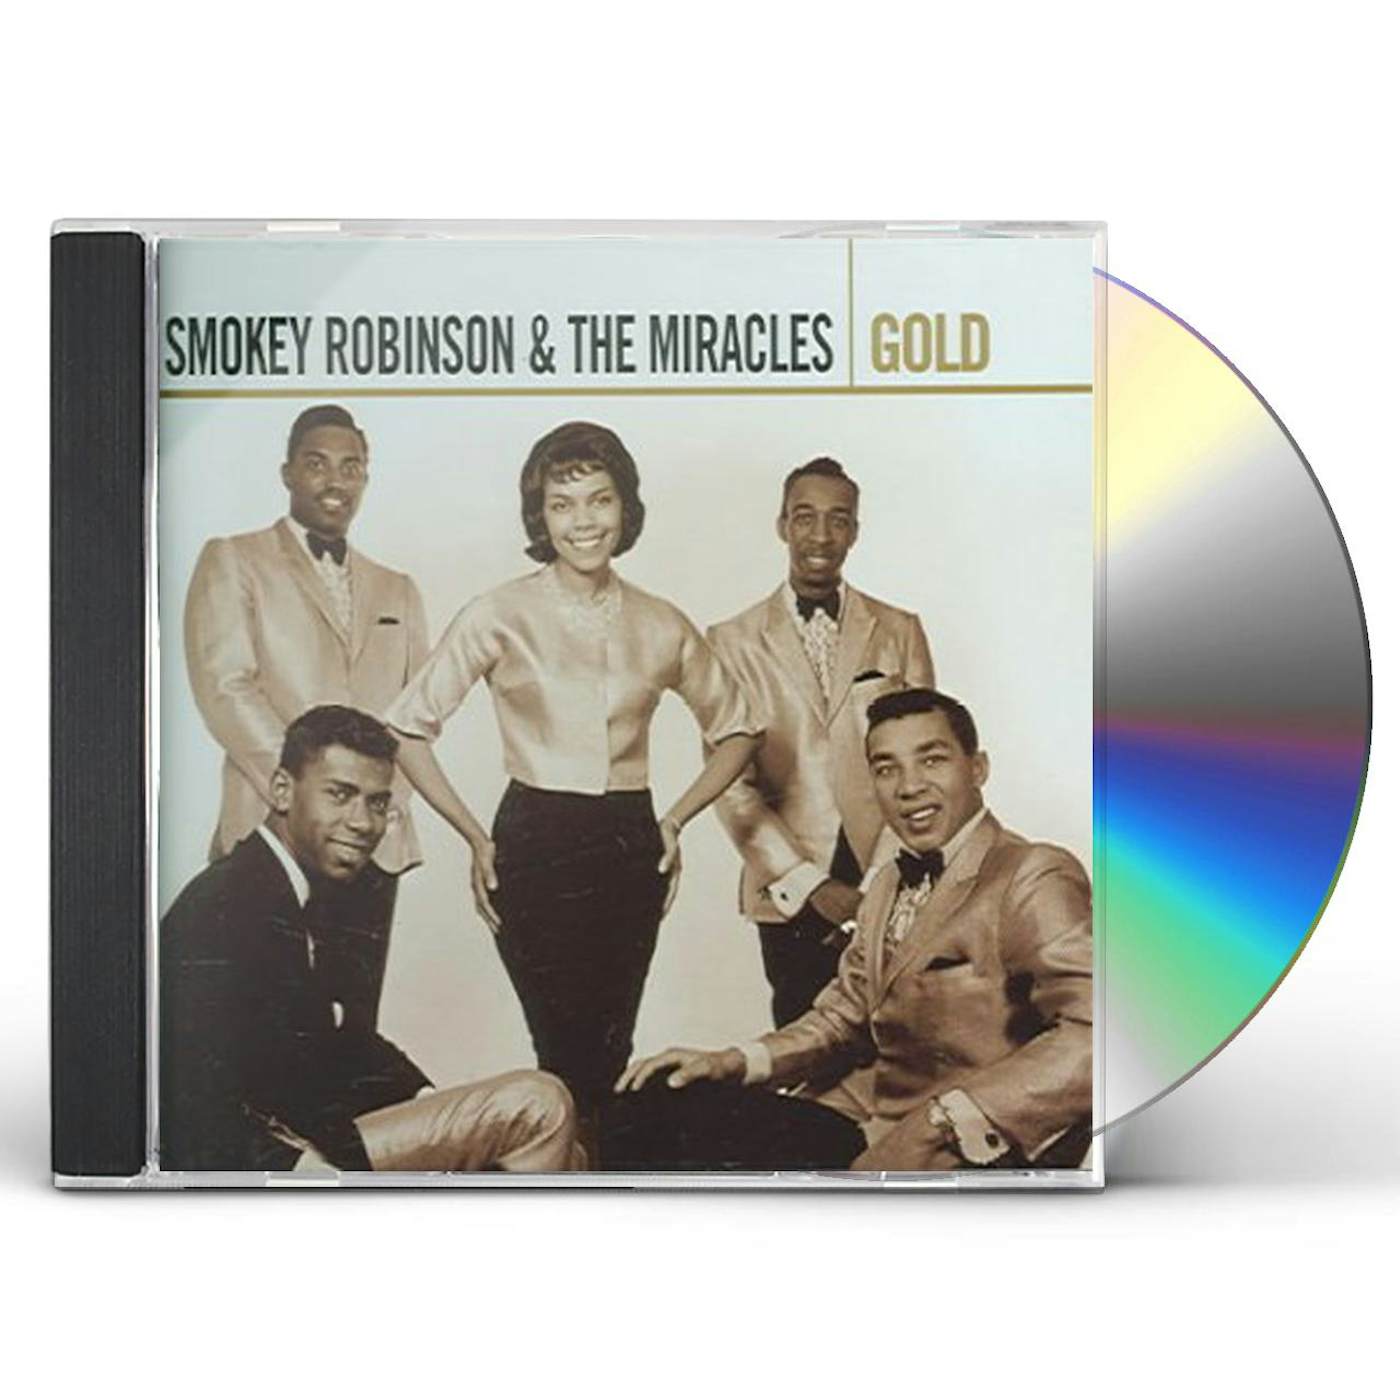 Smokey Robinson & The Miracles GOLD CD